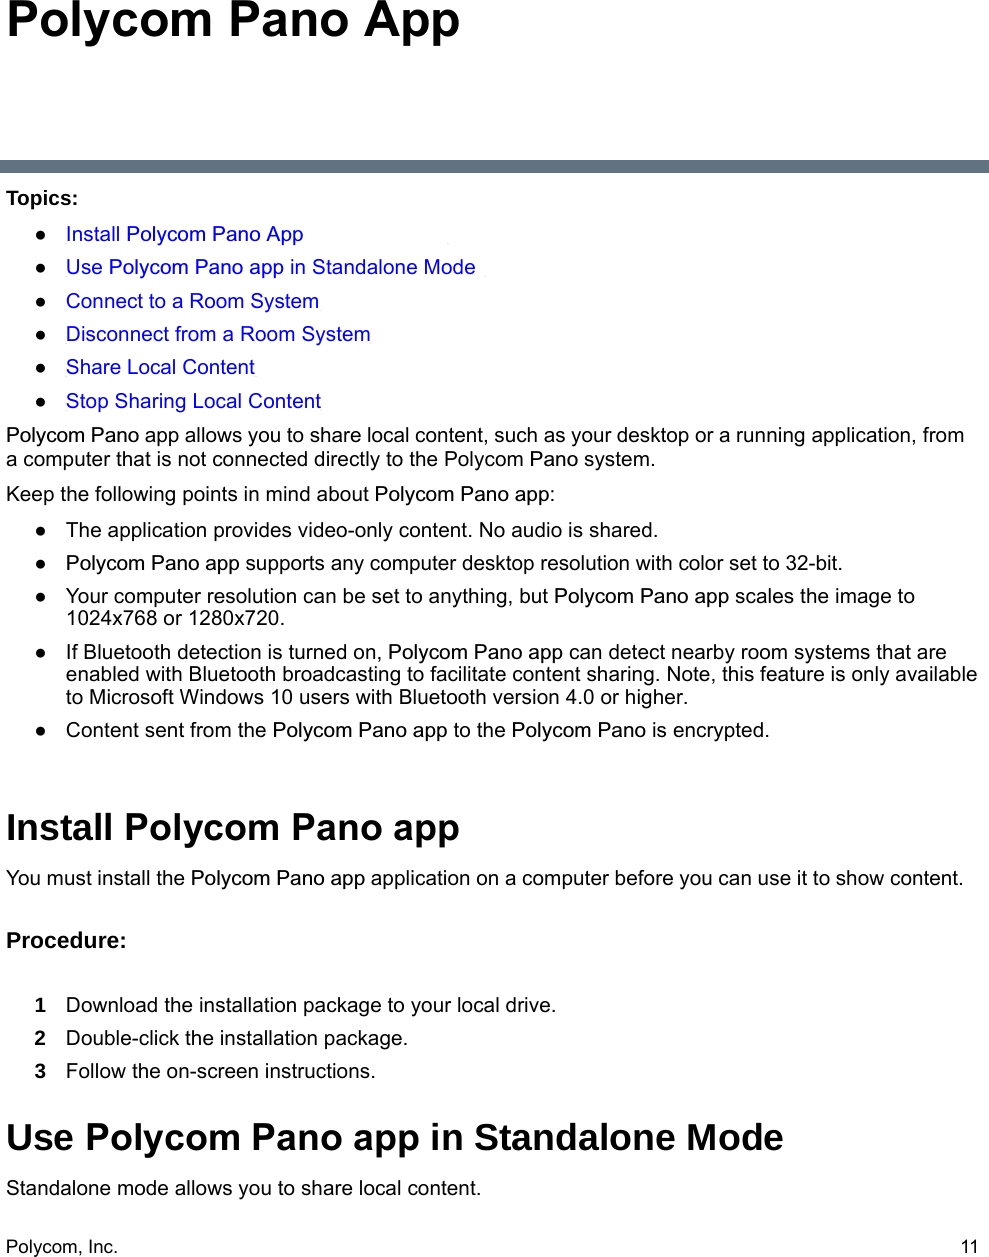 Polycom pano app for mac pc